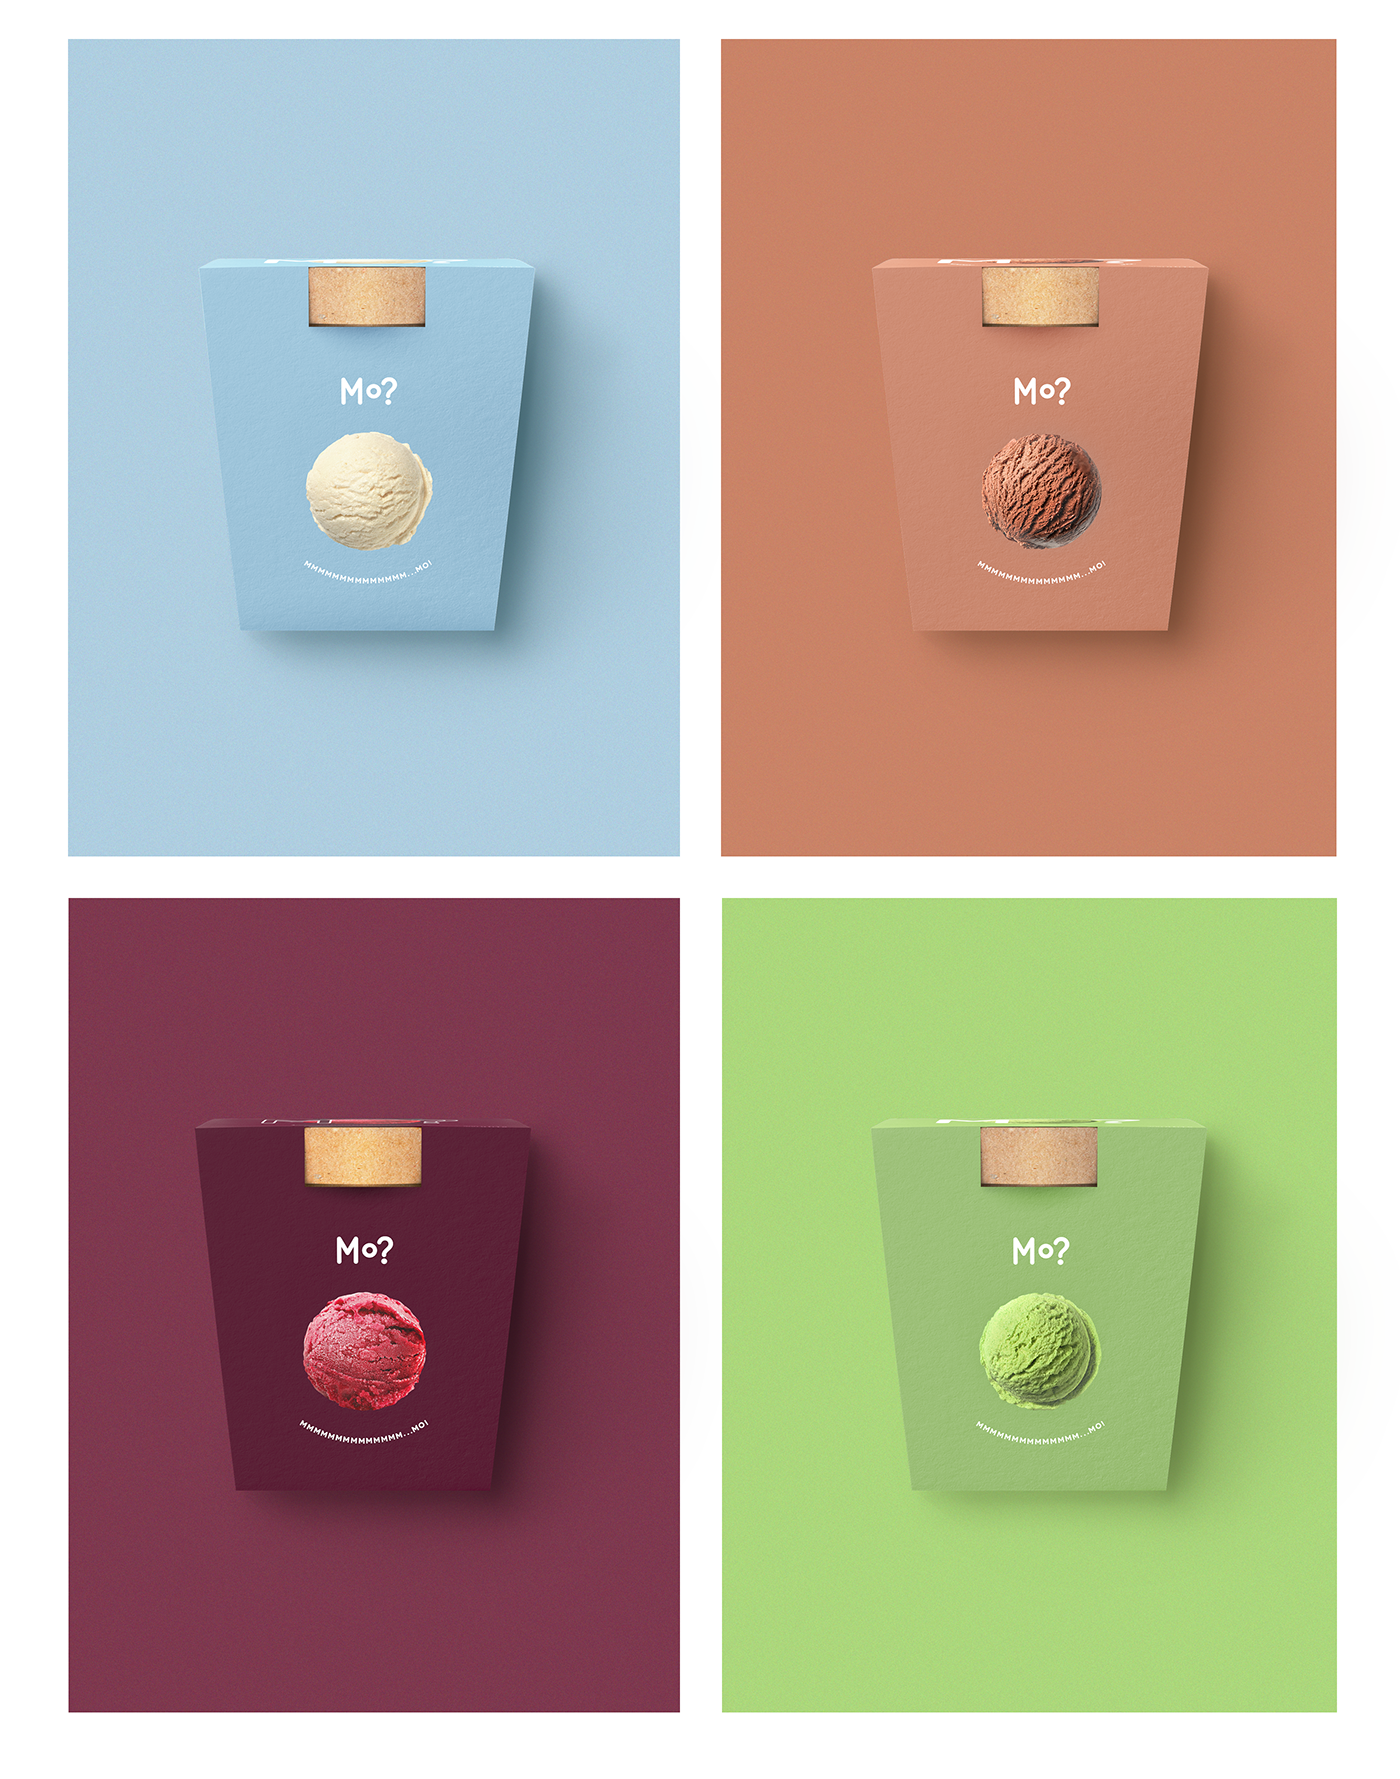 Дизайн упаковки, Spiilka Design Büro, мороженое «Сильпо»